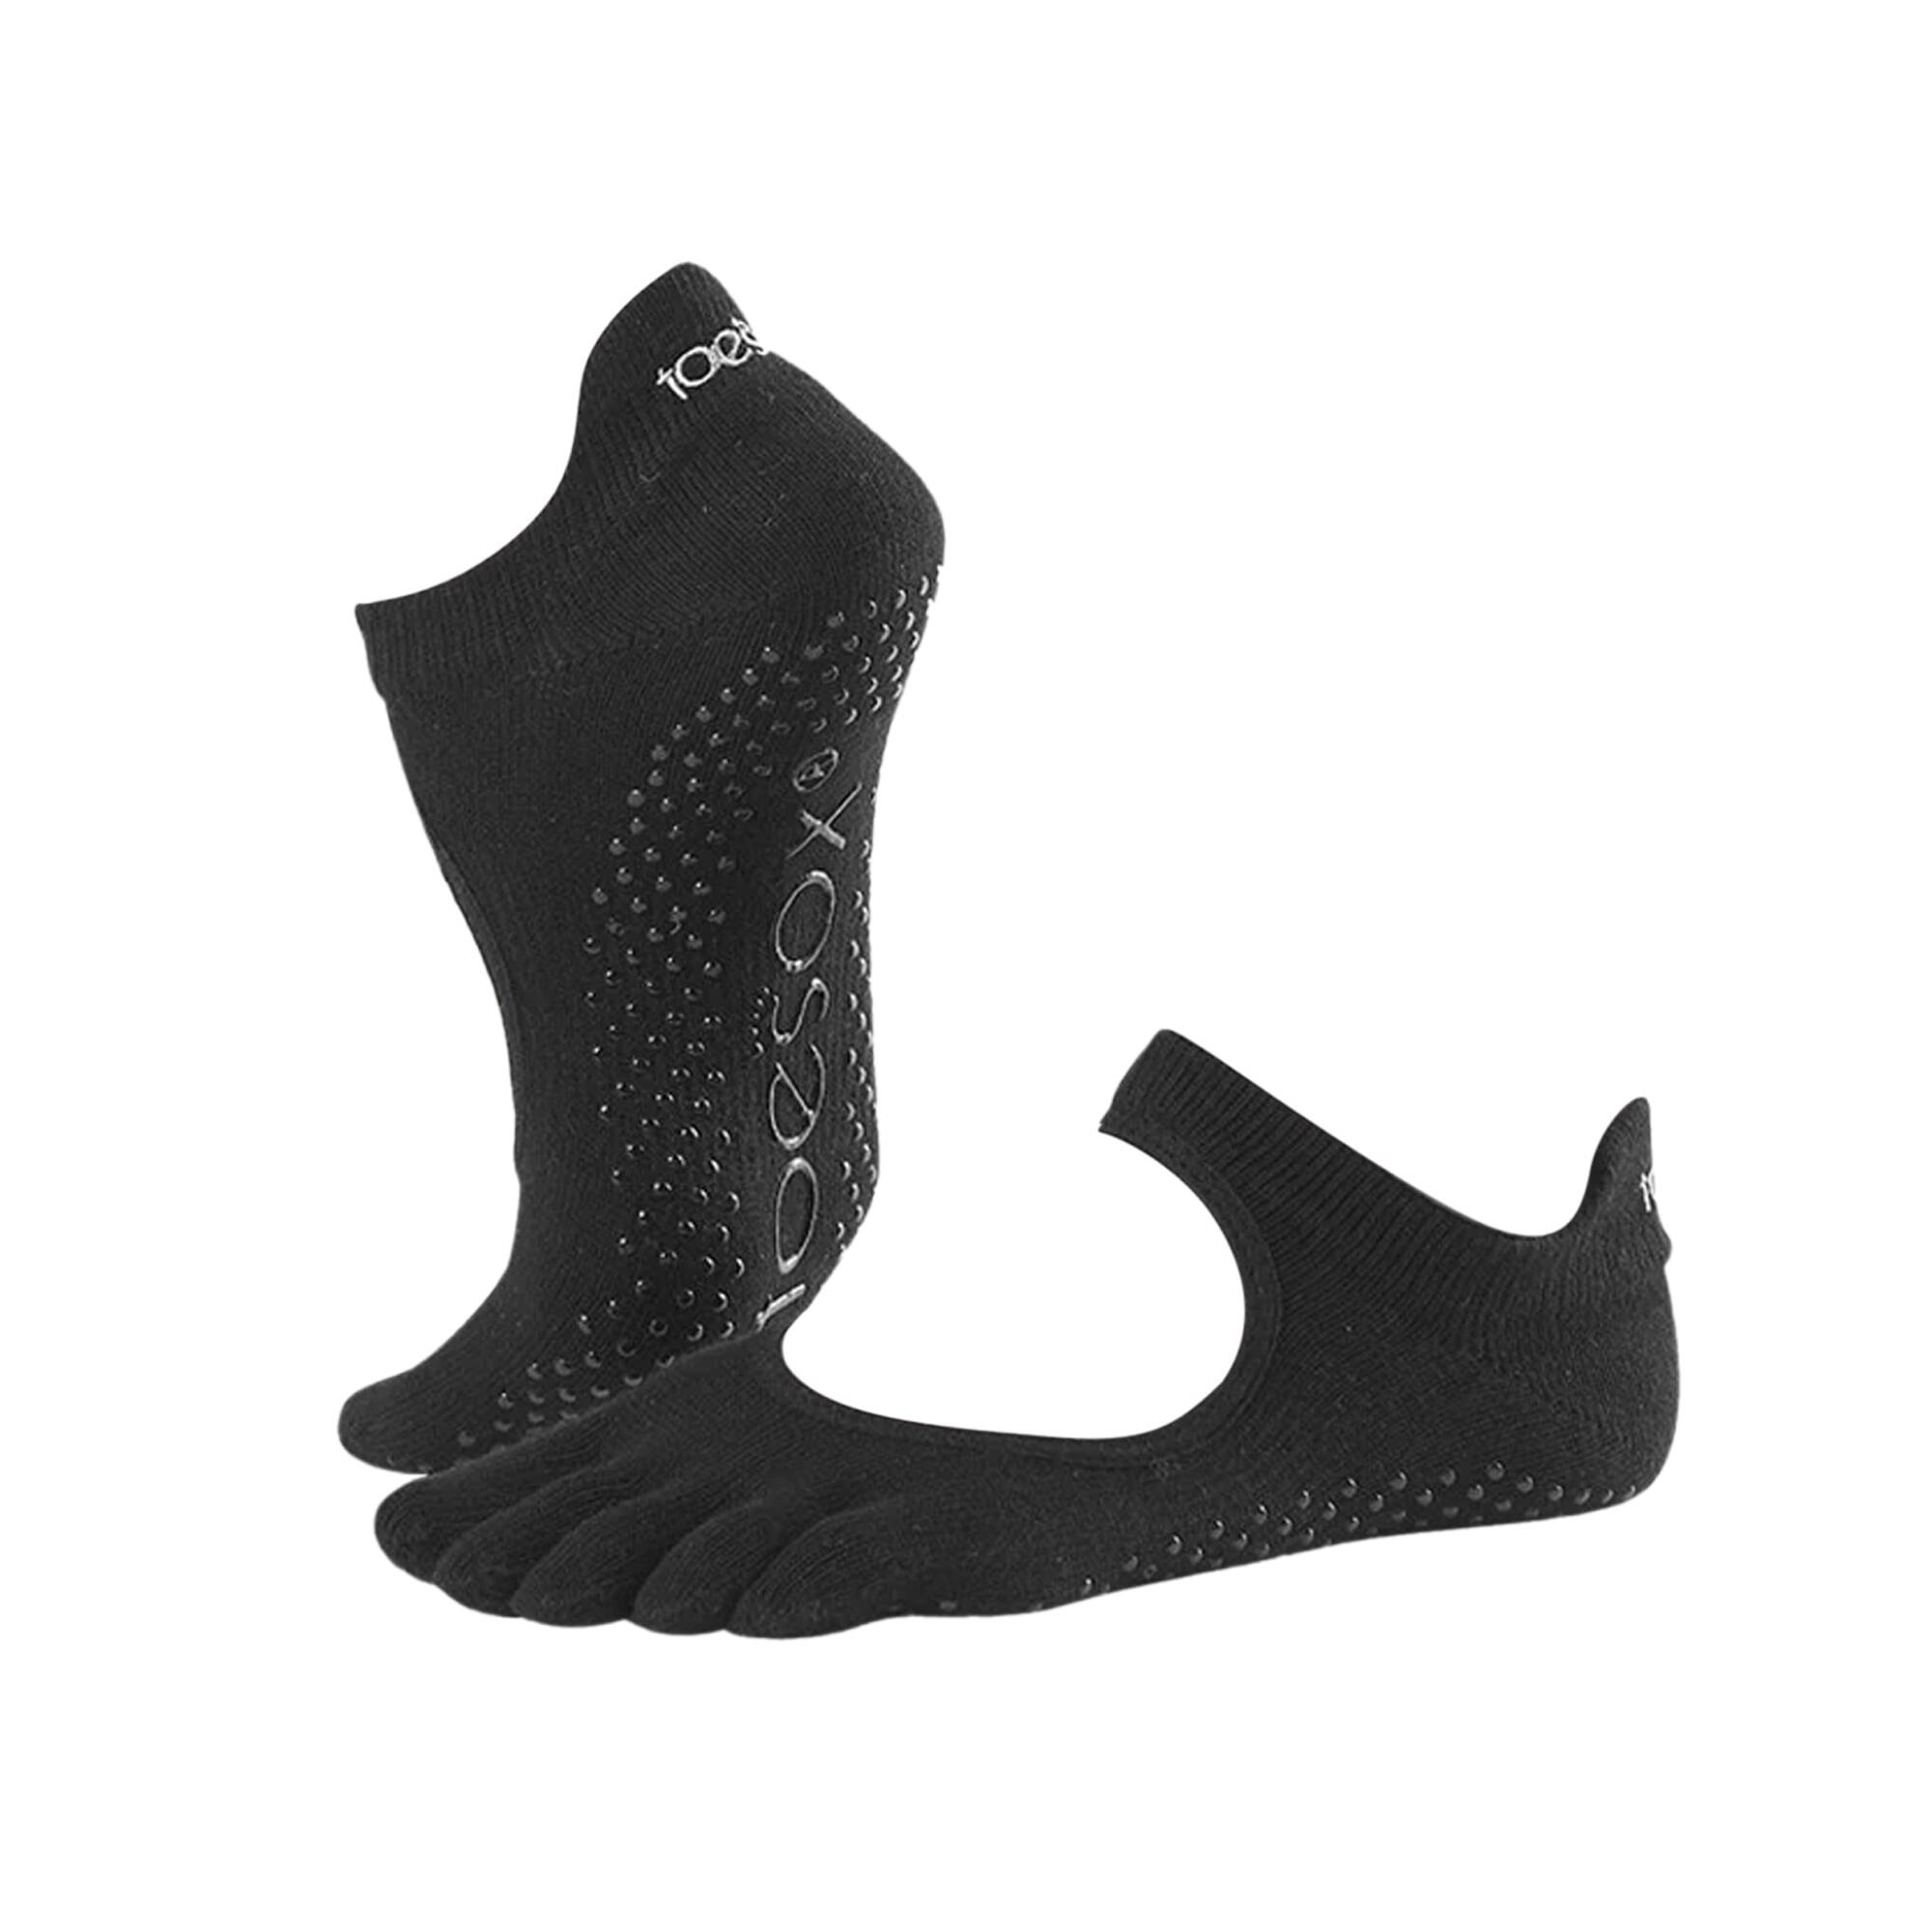 FITNESS-MAD Unisex Adult Bellarina Toe Socks (Black)